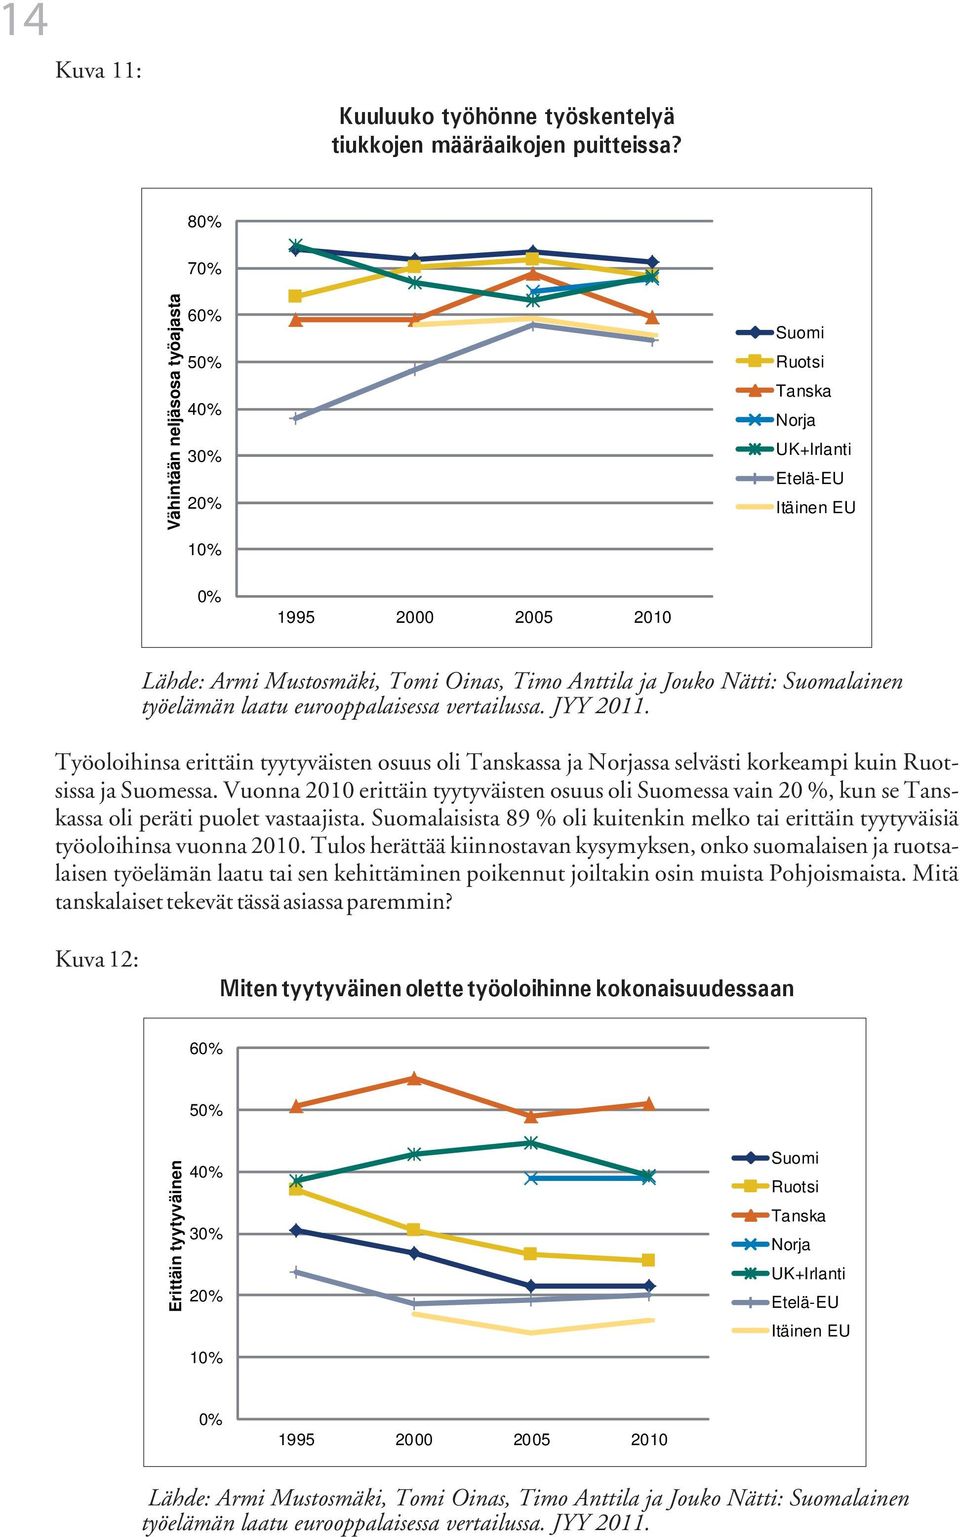 Nätti: Suomalainen työelämän laatu eurooppalaisessa vertailussa. JYY 2011. Työoloihinsa erittäin tyytyväisten osuus oli Tanskassa ja Norjassa selvästi korkeampi kuin Ruotsissa ja Suomessa.